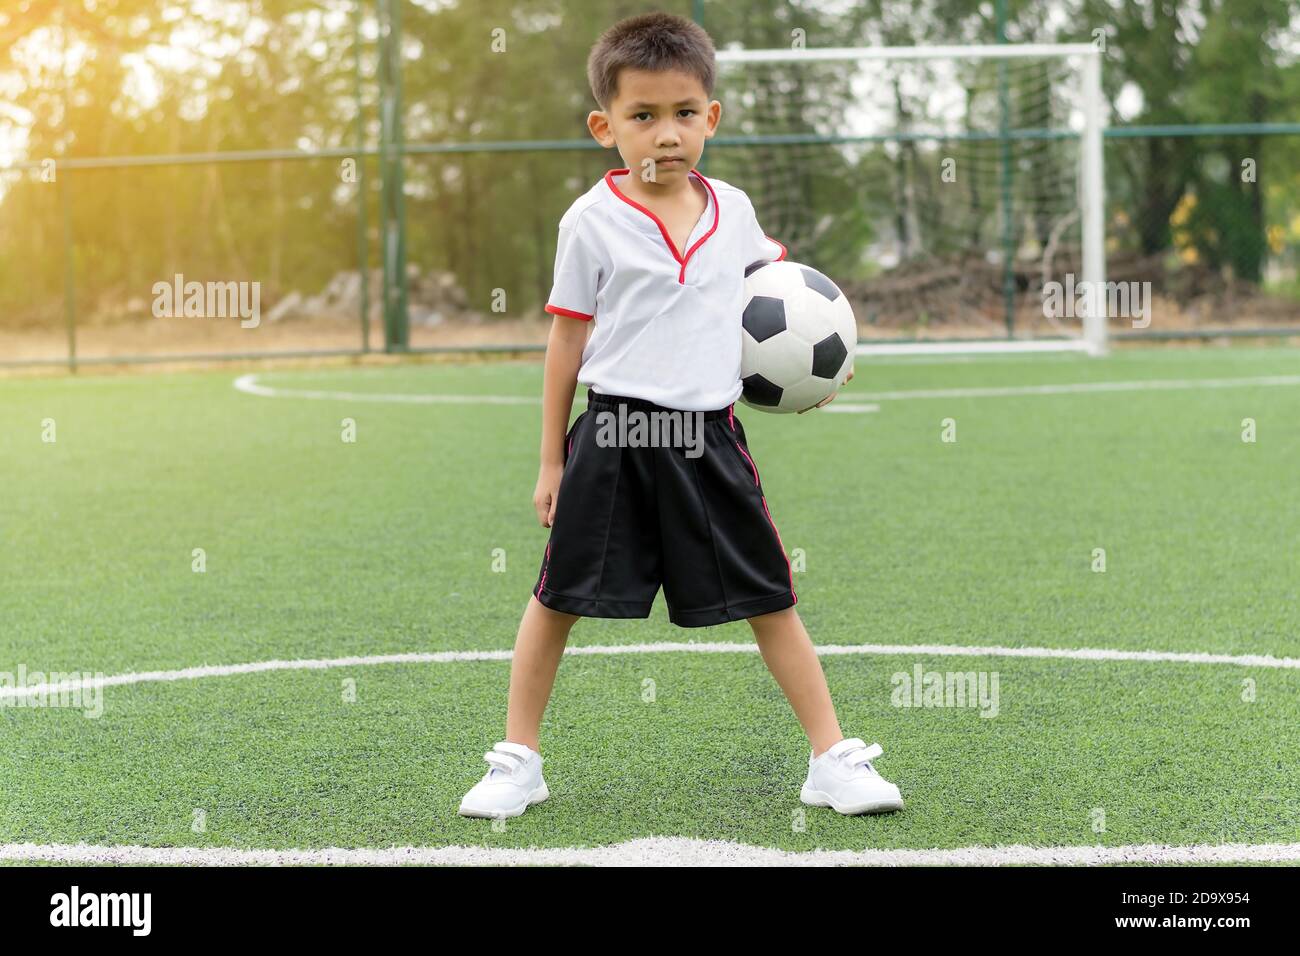 Un garçon asiatique tient un ballon de football sur le terrain. Banque D'Images